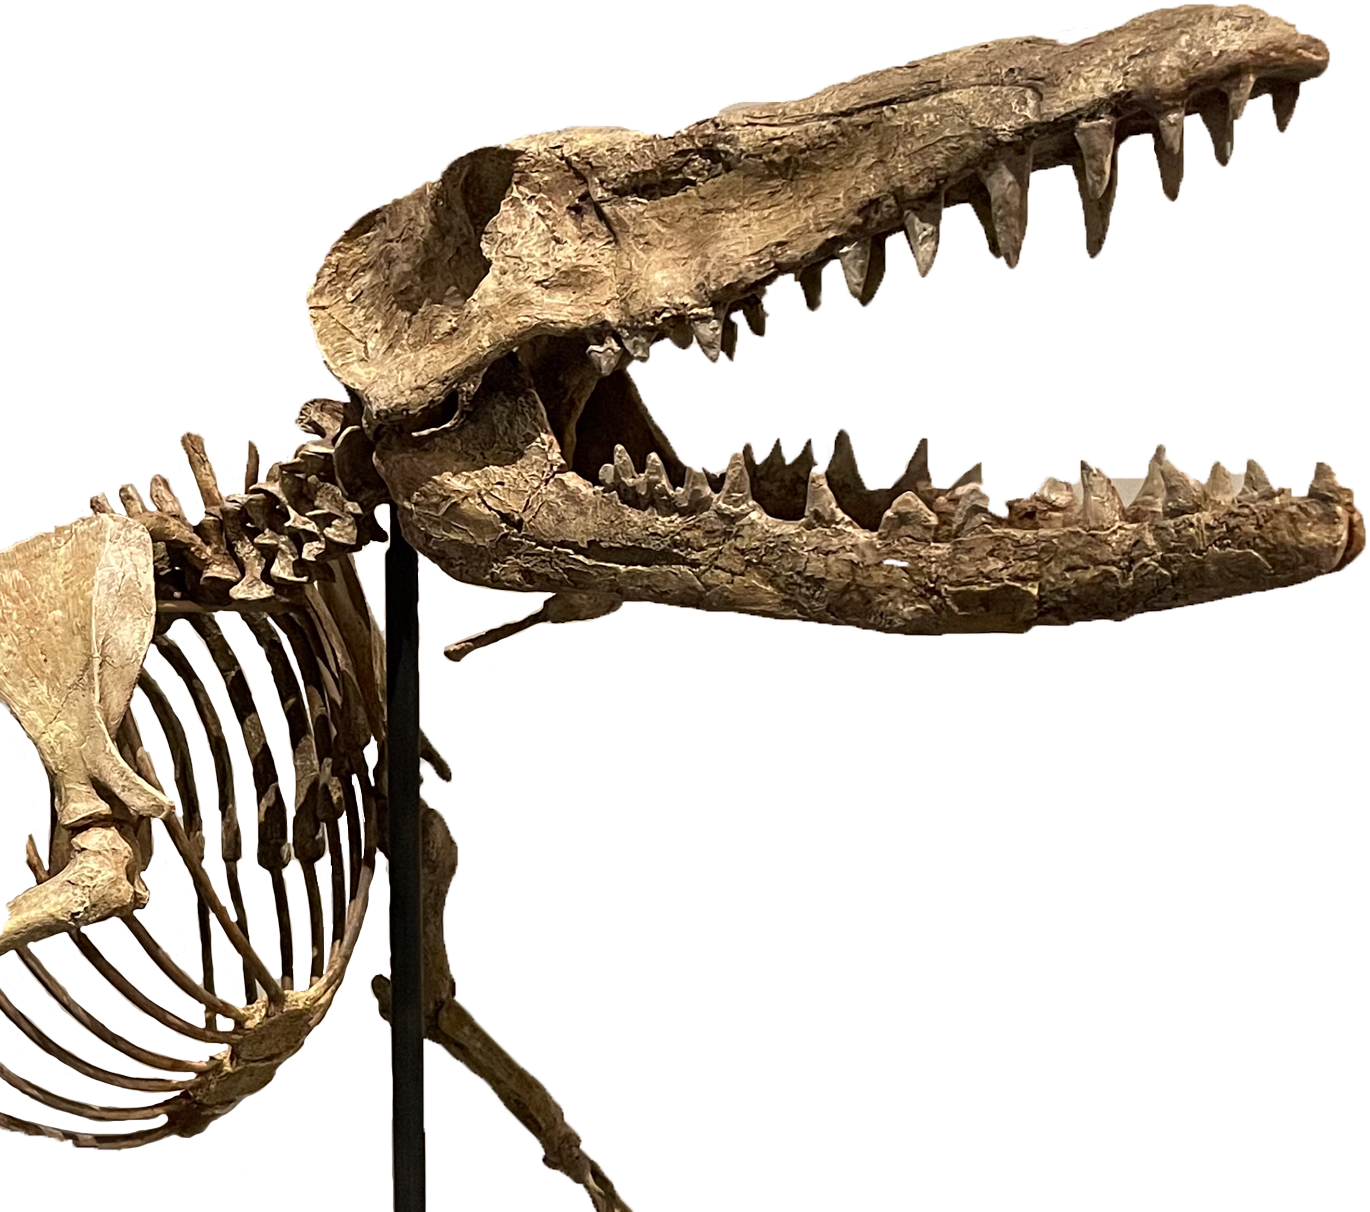 An image of a T-Rex